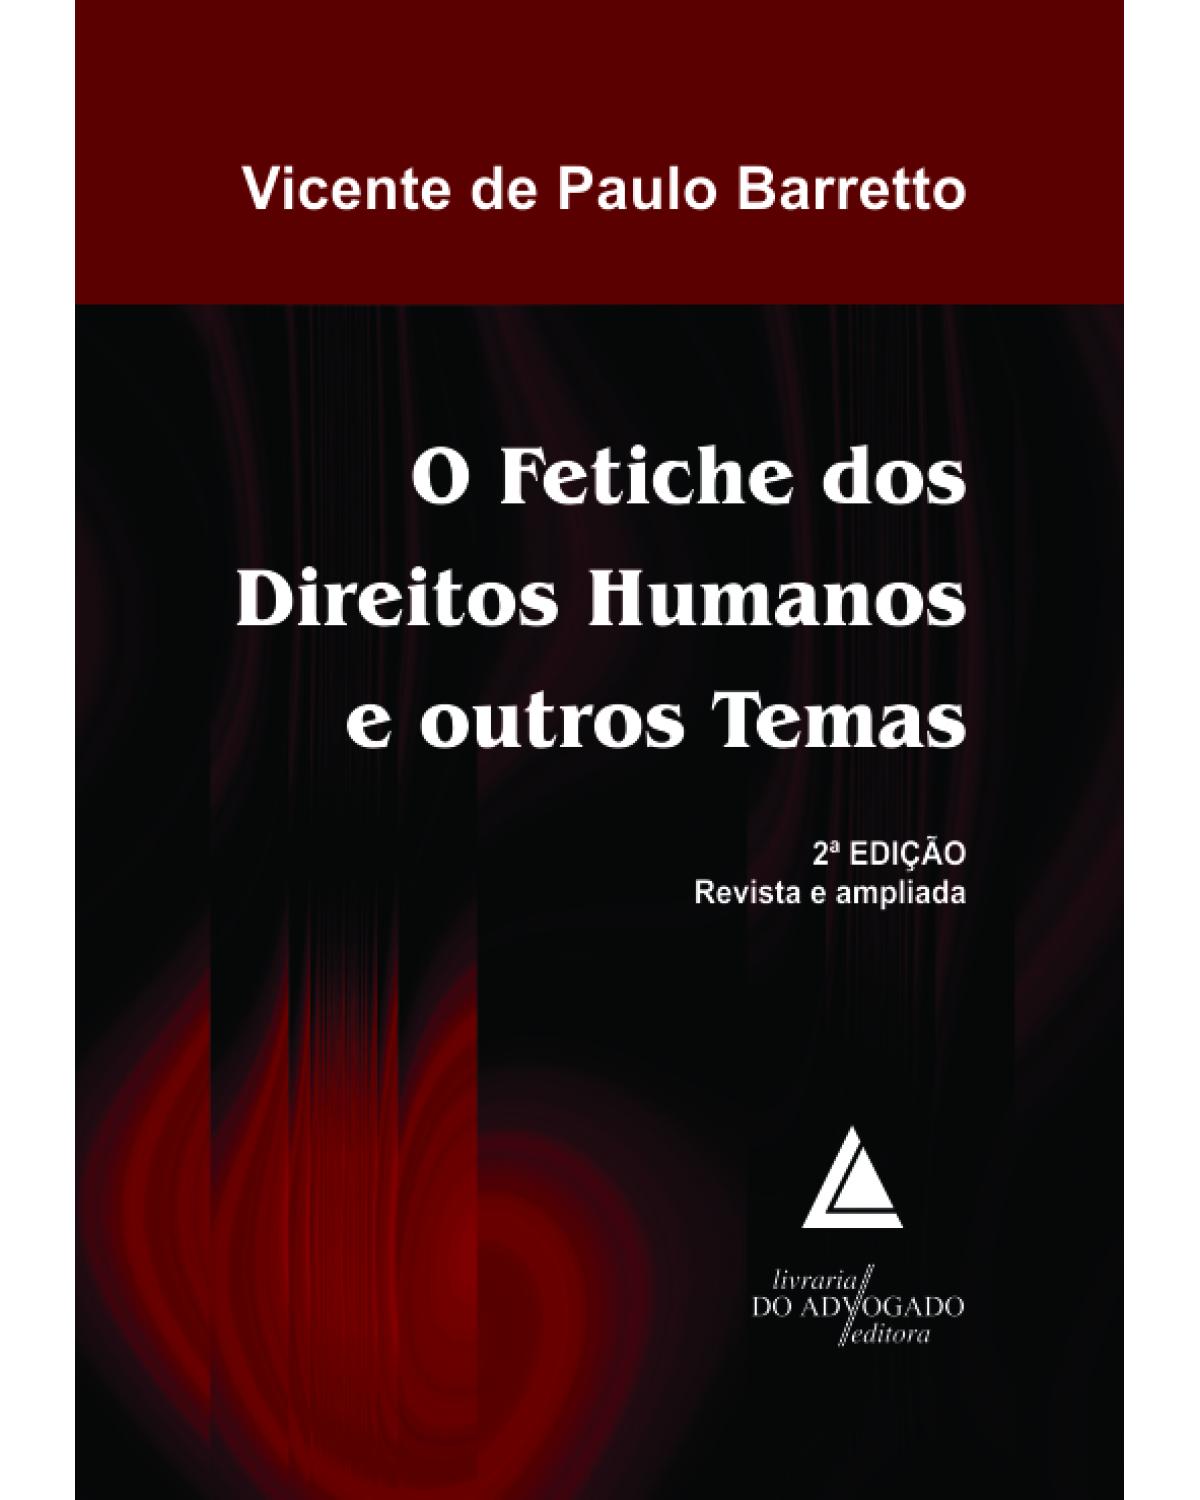 O fetiche dos direitos humanos e outros temas - 2ª Edição | 2013